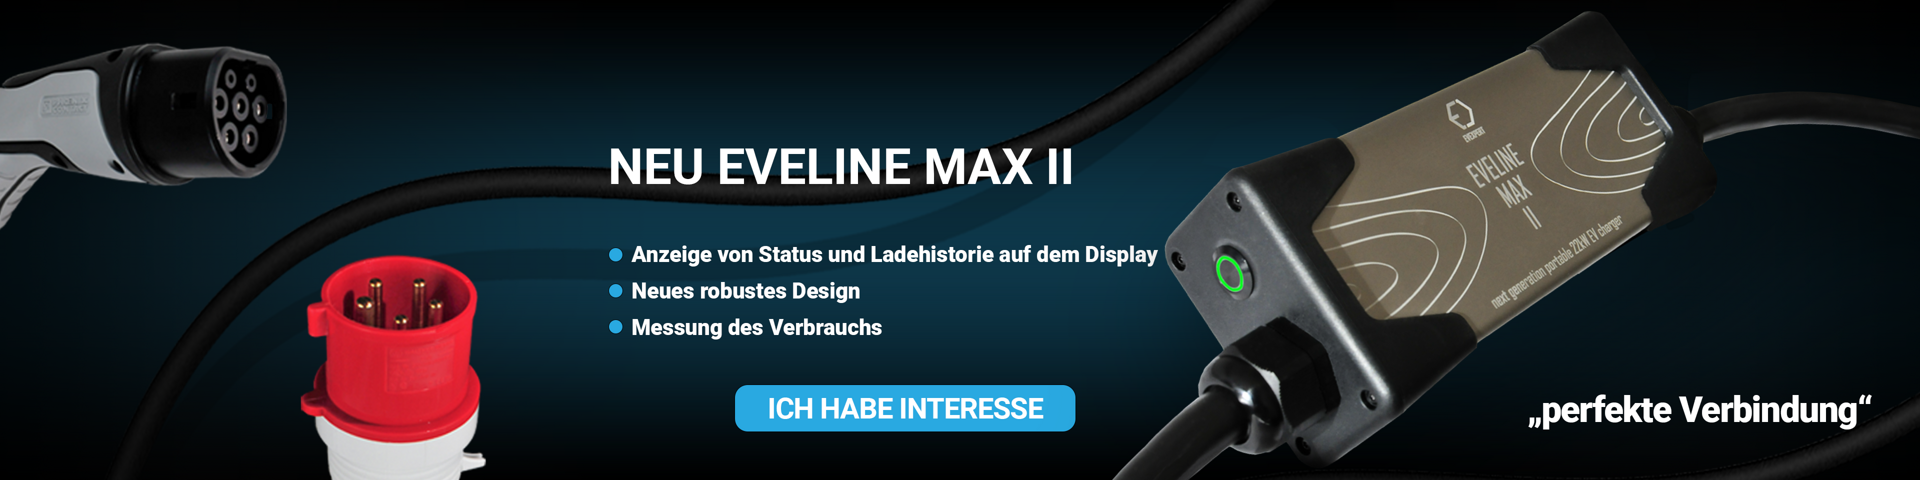 banner eveline max II DE